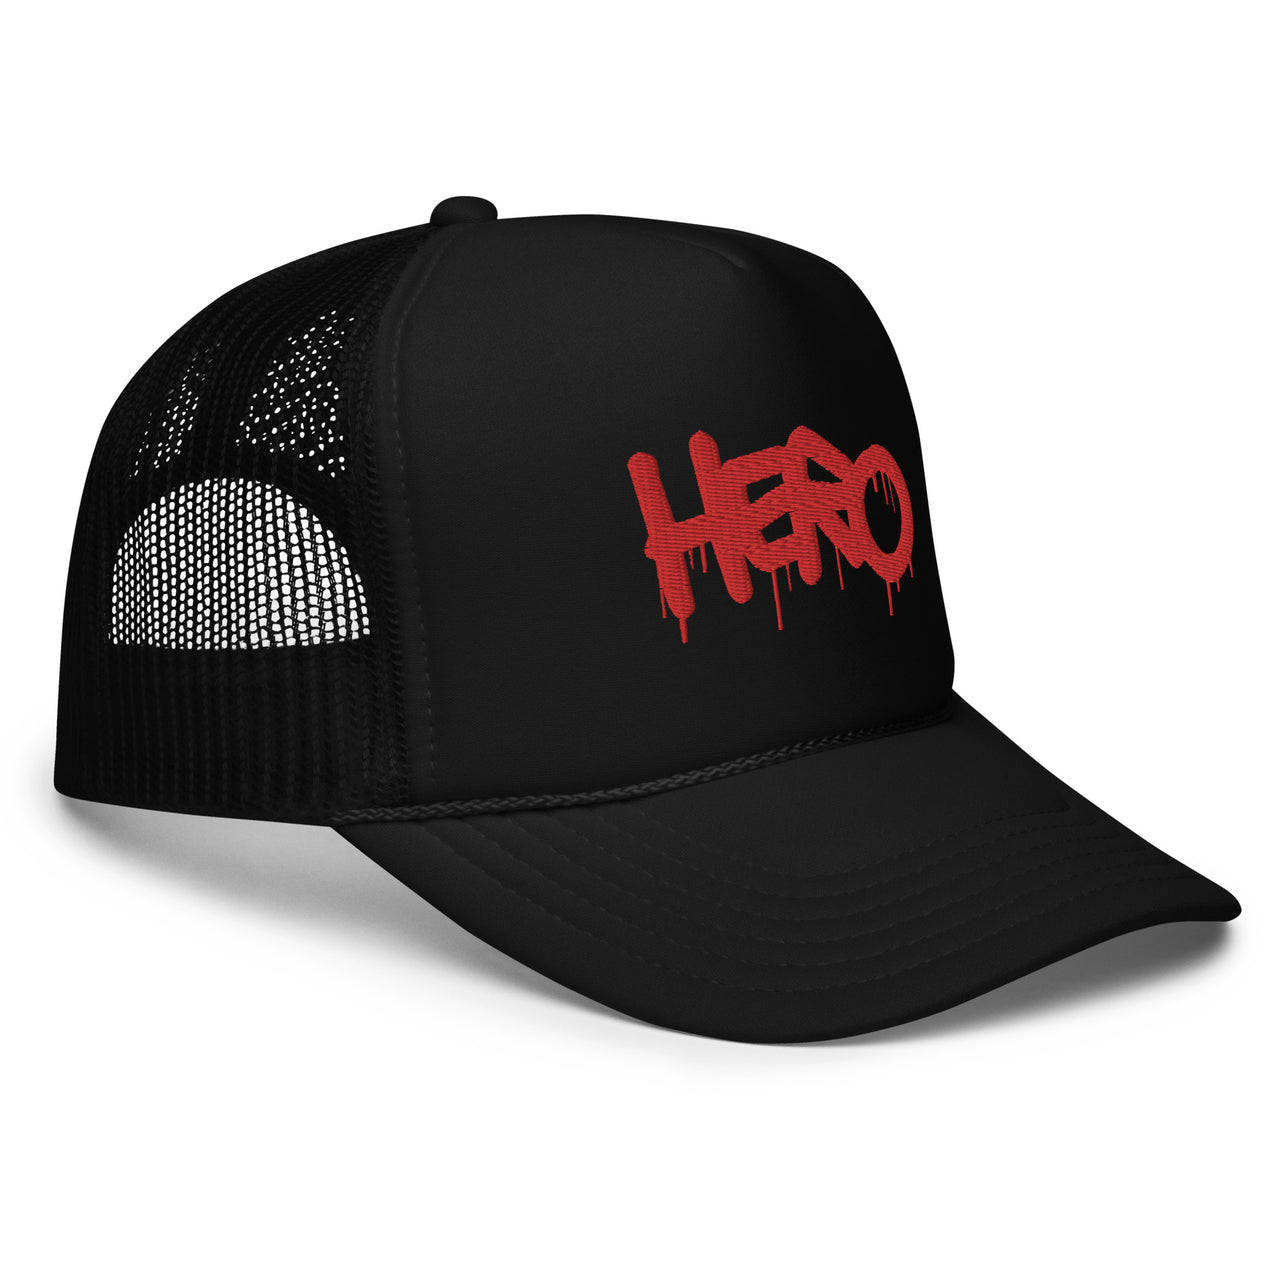 HERO - Foam trucker hat - Design Hero